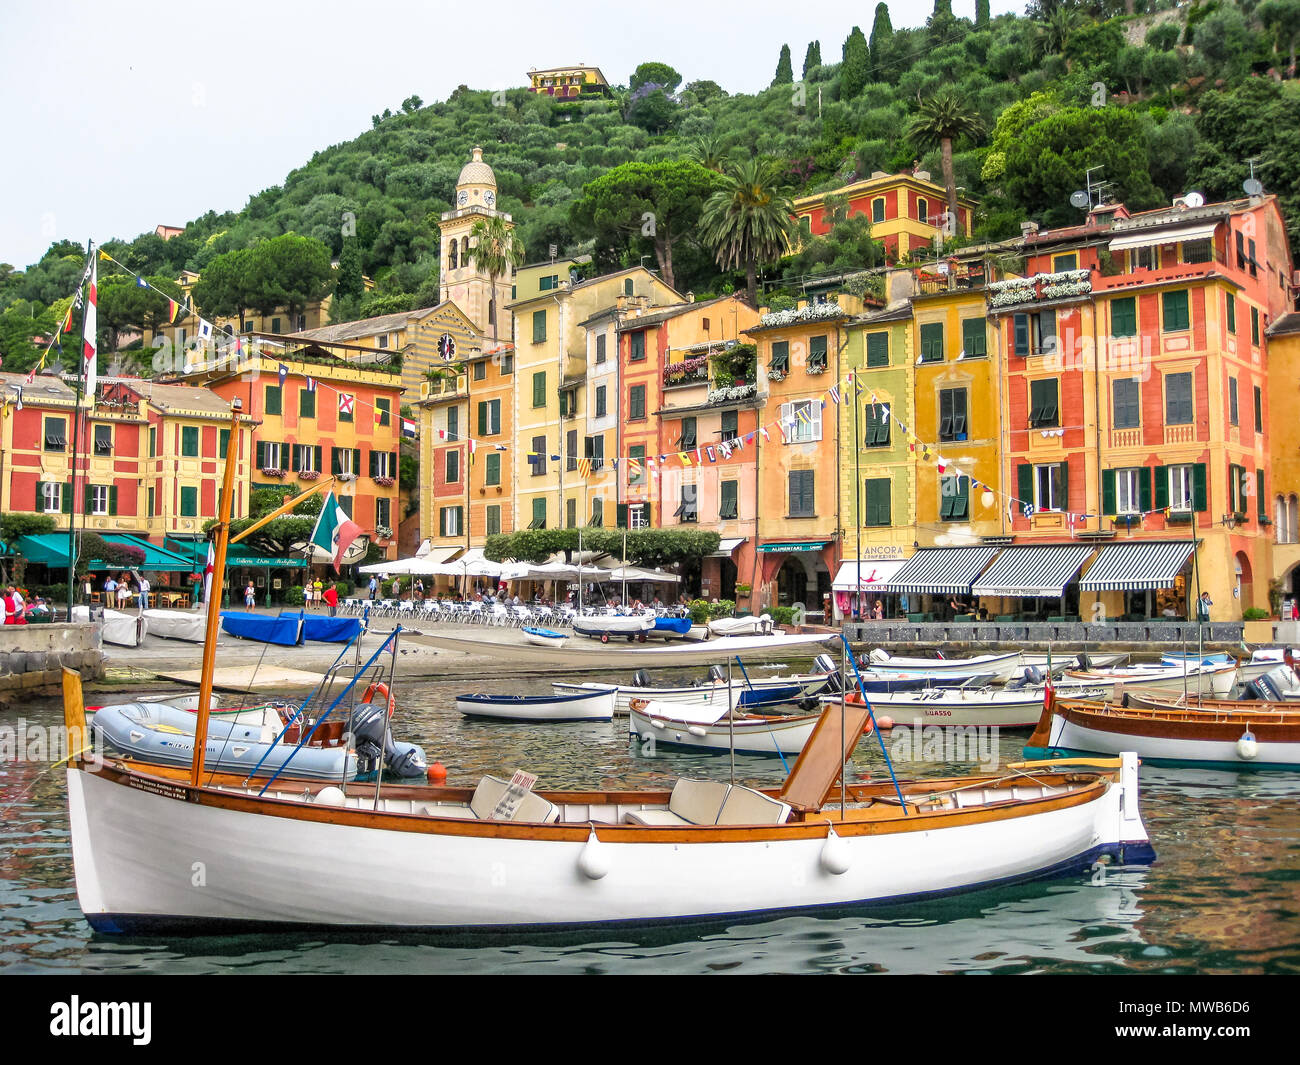 Portofino, ligurie, italie - circa Juin 2010 : panorama du port pittoresque et de luxueux yachts de Portofino, dans la célèbre station de vacances et village de pêcheurs italiens, province de Gênes , Italie. Banque D'Images